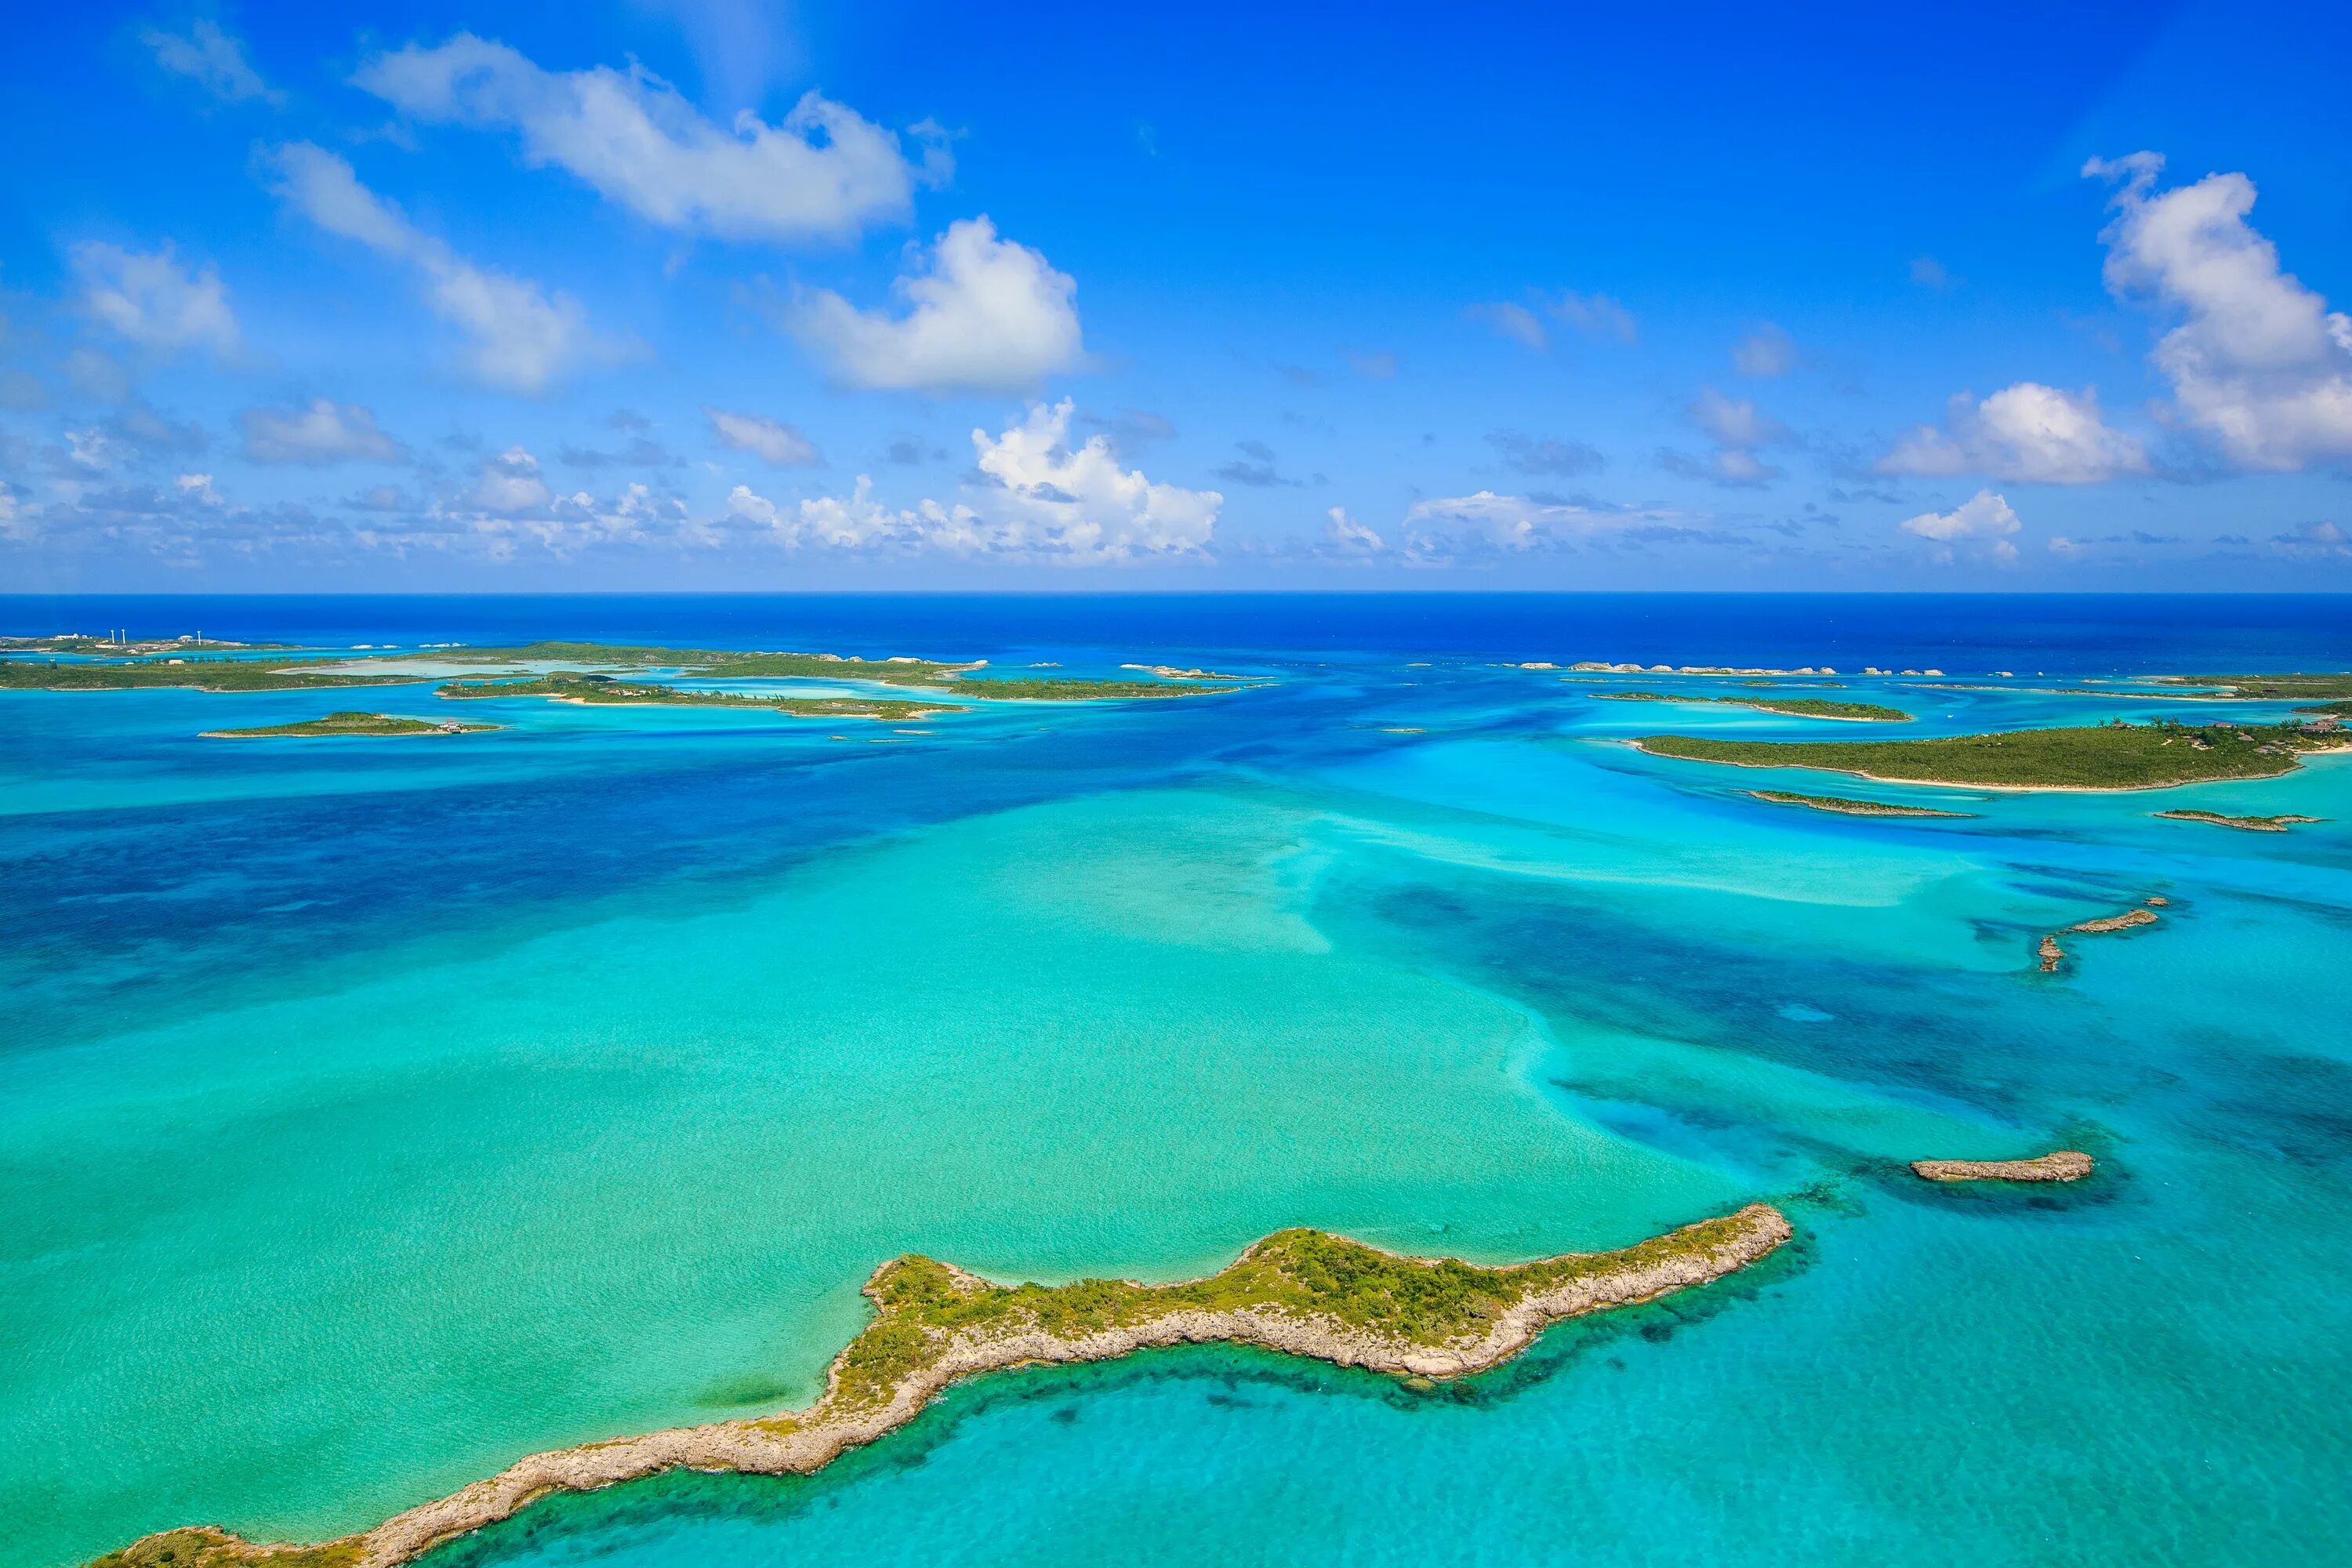 Bahamas islands. Остров Парадайз Багамские острова. Содружество Багамских островов. Эксума Багамские острова. Багамы Карибское море.